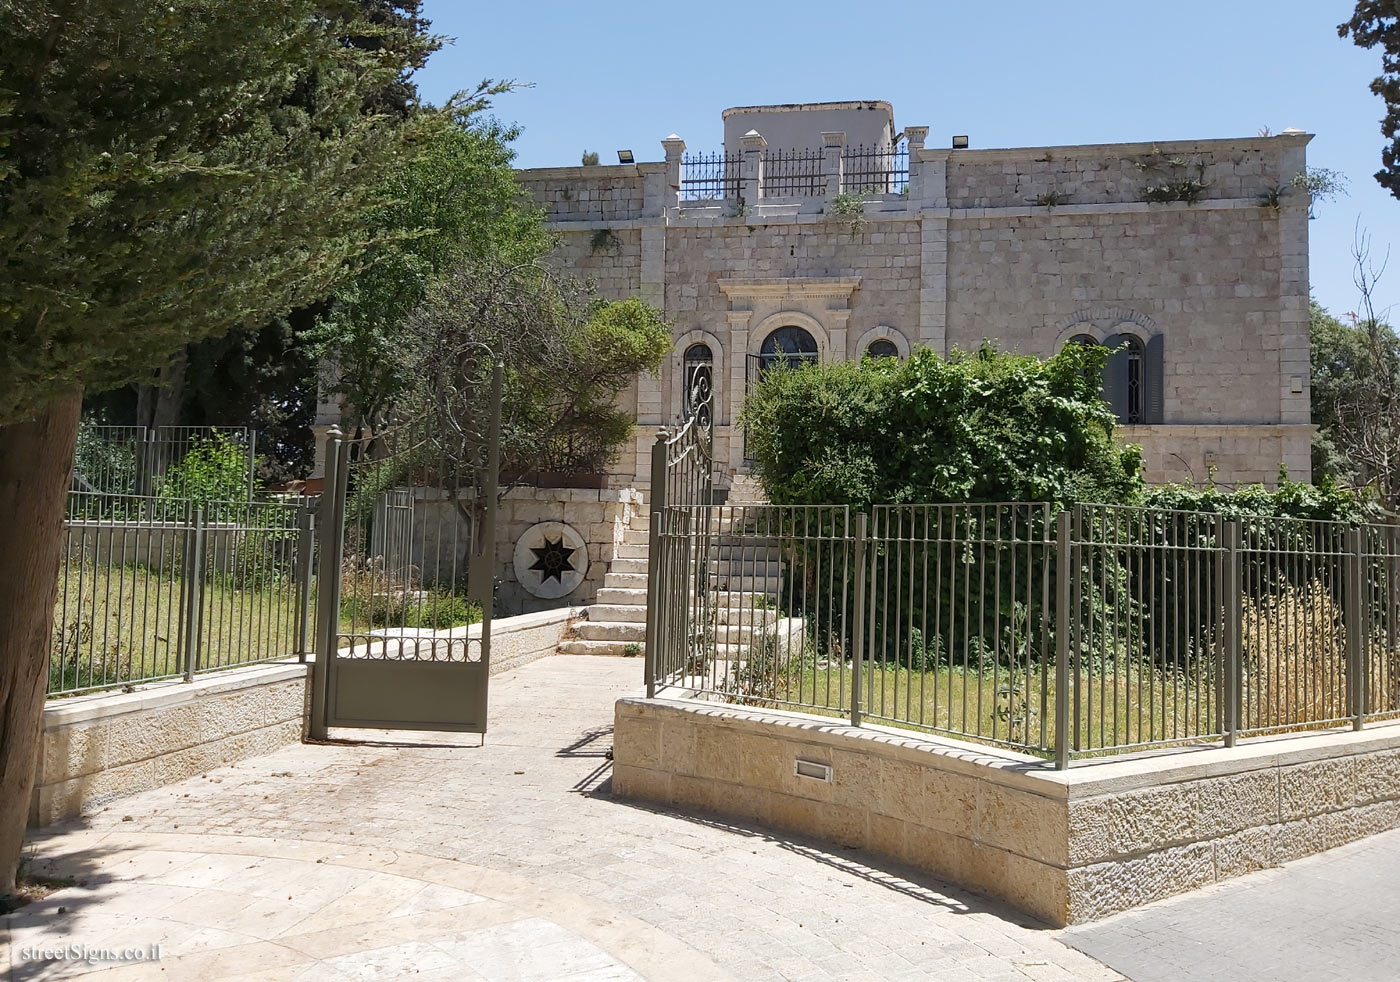 Jerusalem - Heritage Sites in Israel - The Bishop’s House - Ha-Nevi’im St 25, Jerusalem, Israel